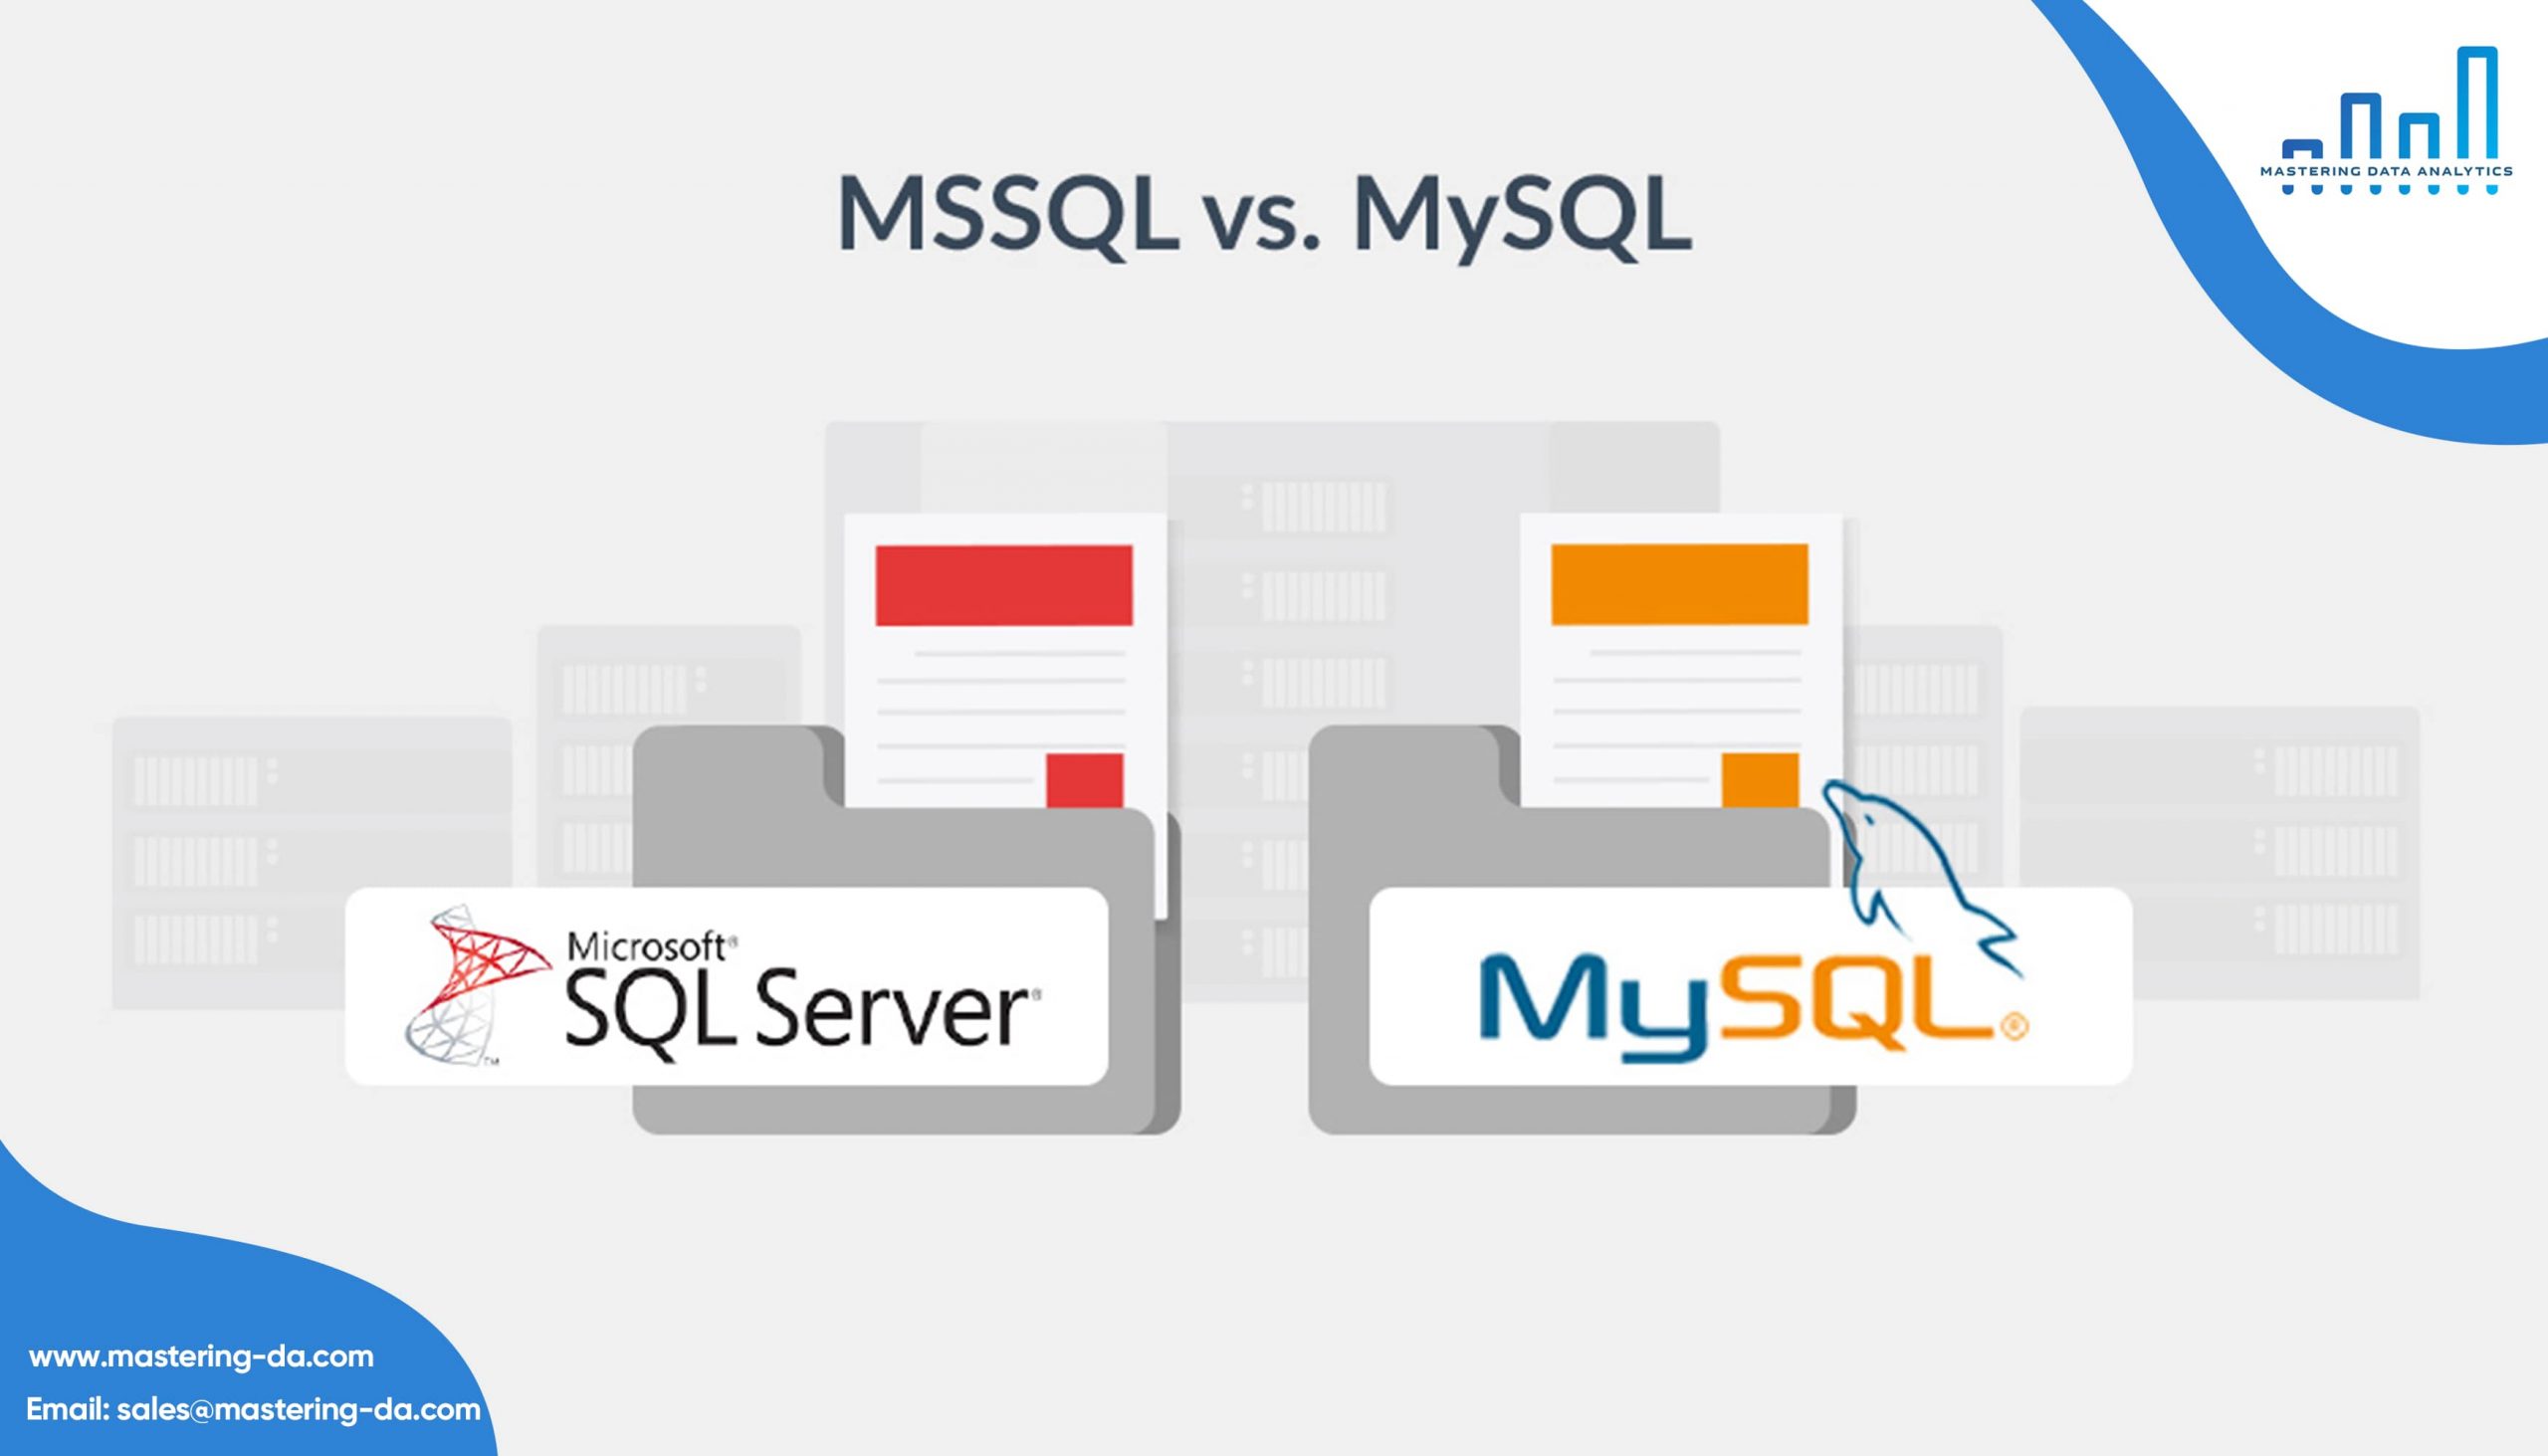 So sánh MySQL và SQL Server